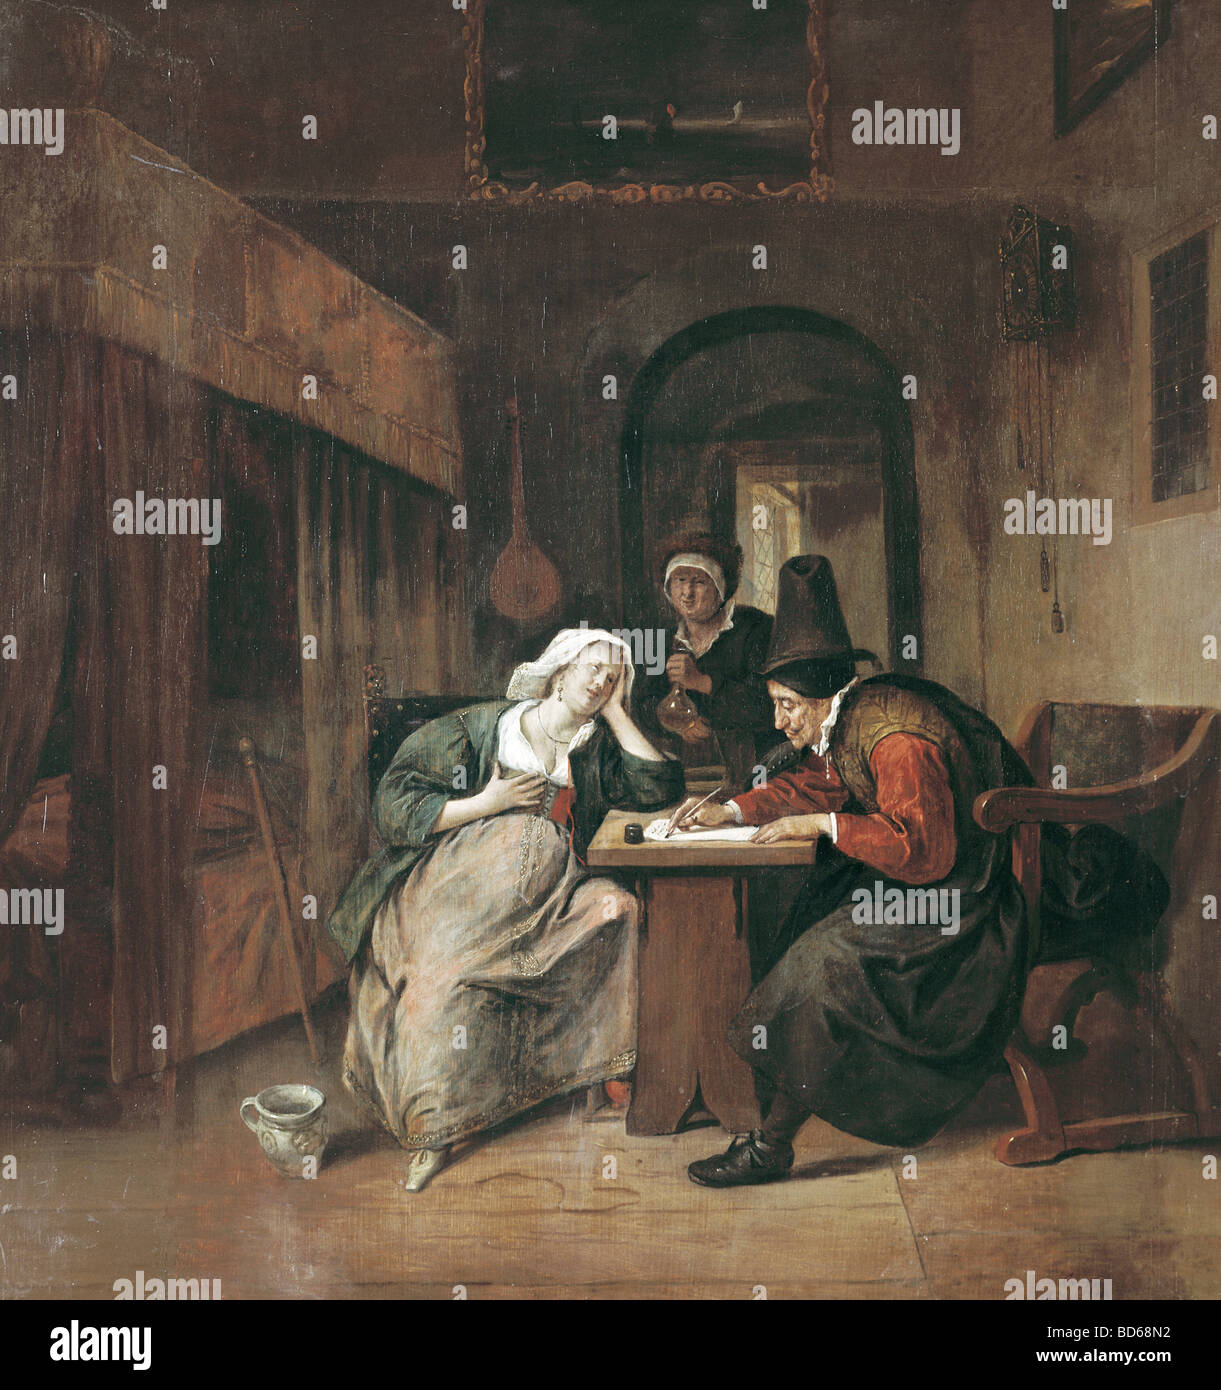 Beaux-arts, Steen, Jan (1626 - 3.2.1679), peinture, 'une femme au foyer de maladie', Narodni Galerie, Prague, flamand, néerlandais, Baroque, doct Banque D'Images